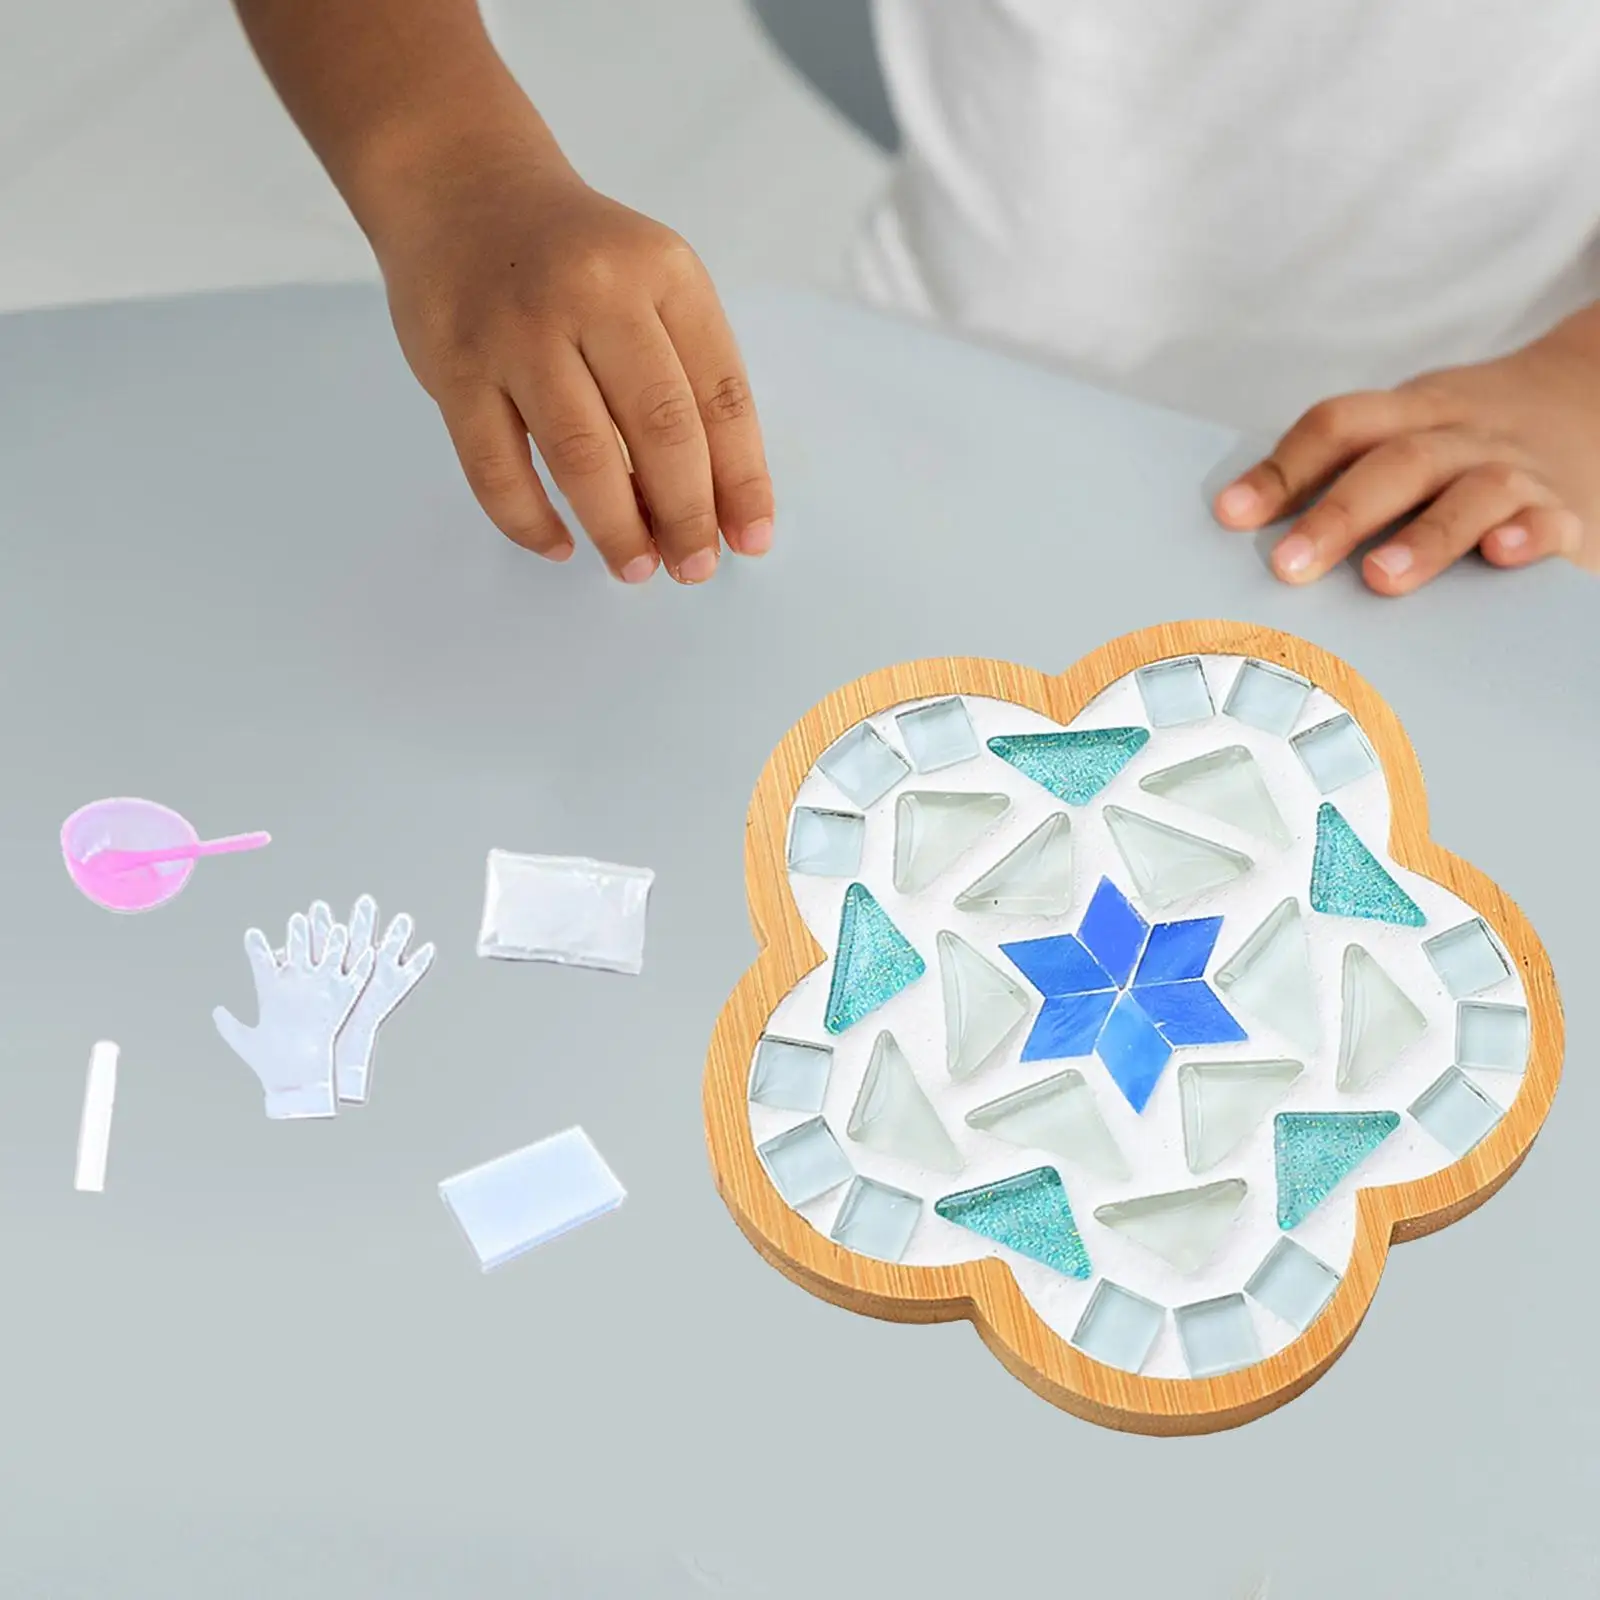 DIY Mosaic Coaster Cup Holder Creative Mosaic Materials Holiday Gift Place